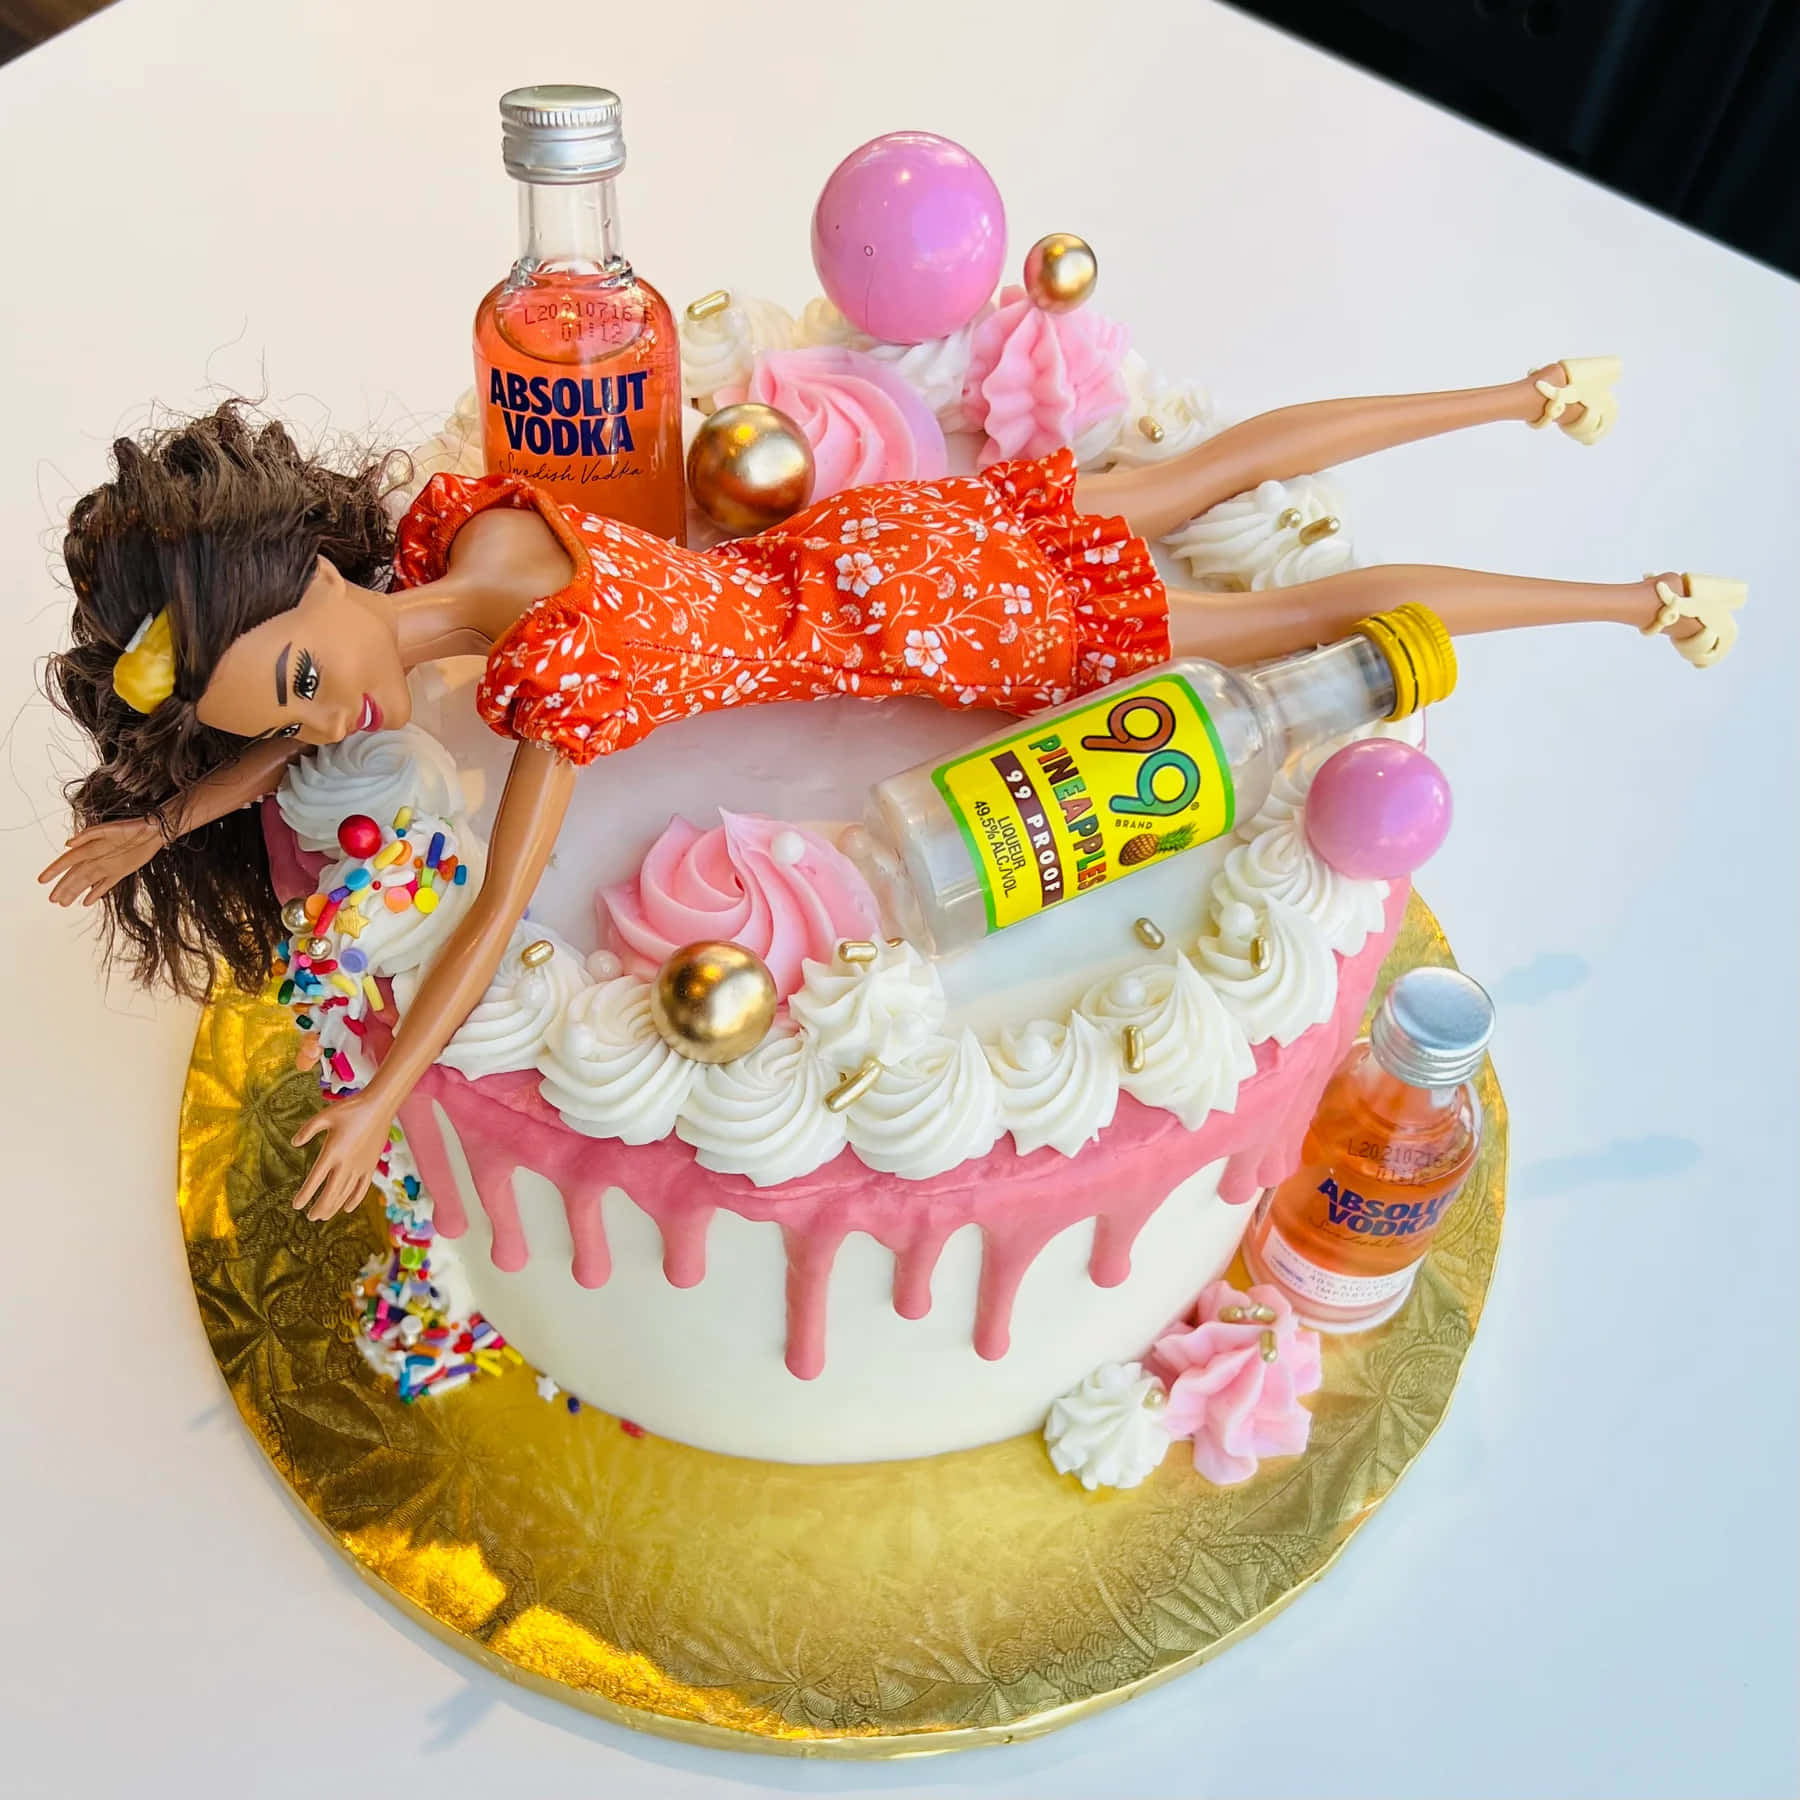 Lustigesbild Von Barbie Bei Einer Feucht-fröhlichen Party.